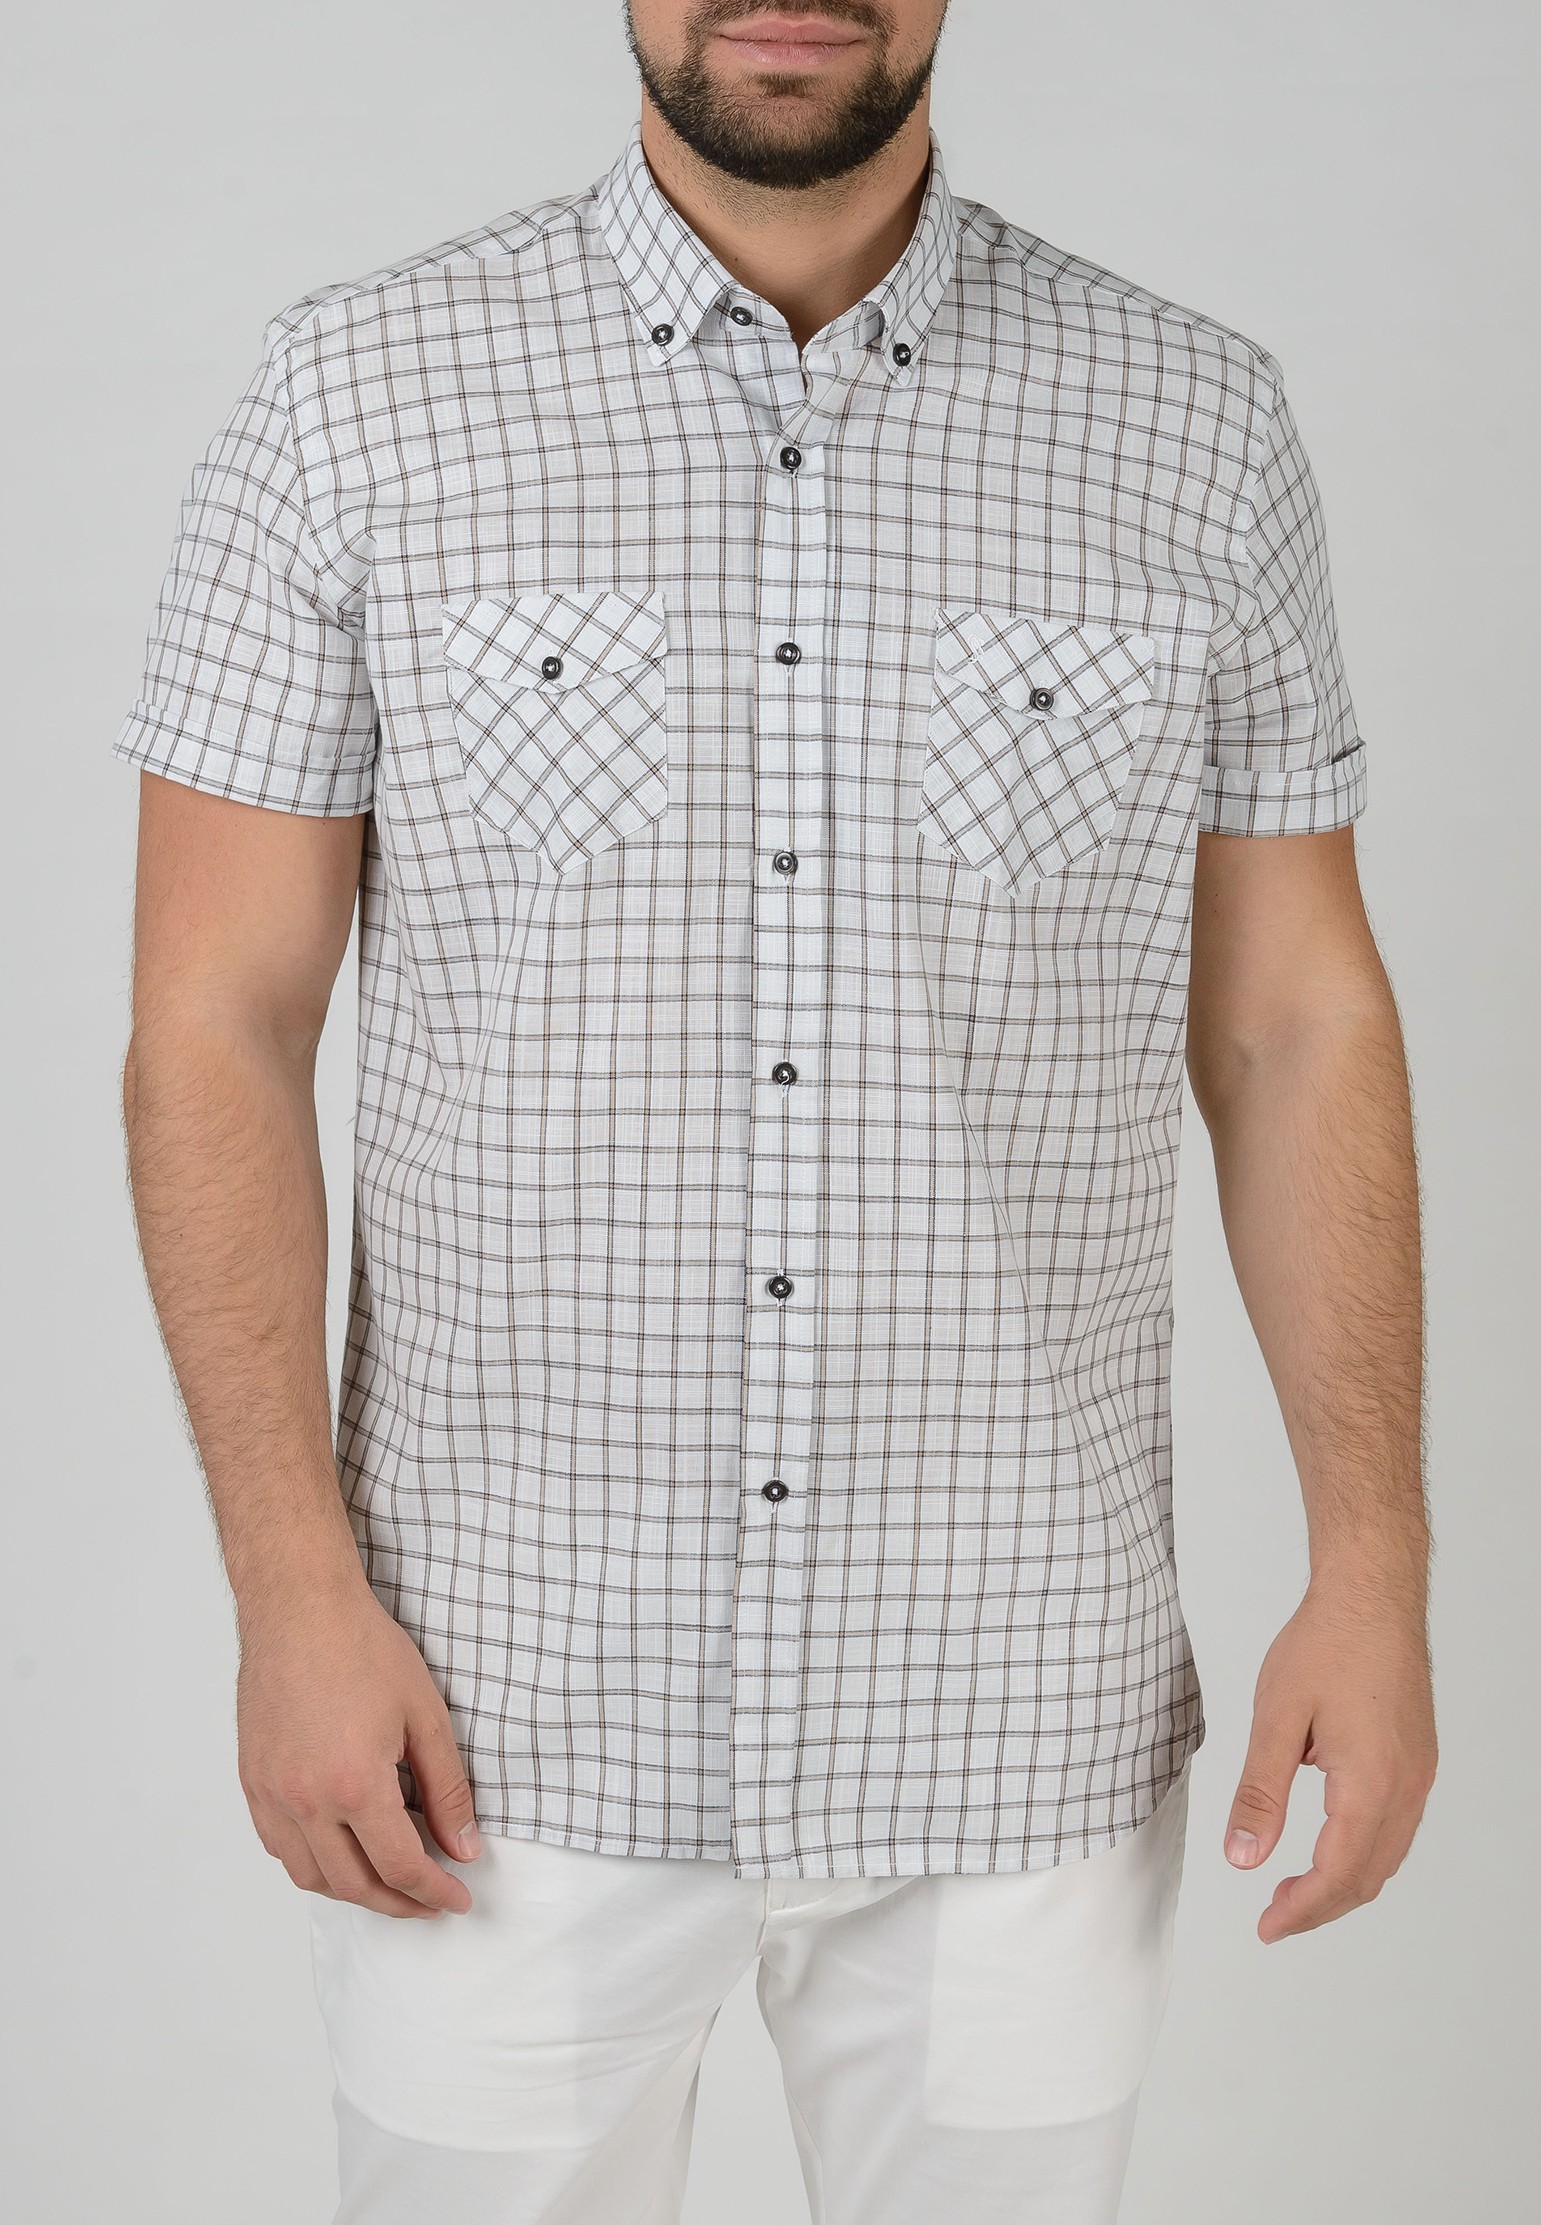 Вельветовая рубашка STEFANO BELLINI Белый, размер 50 132486 - фото 1